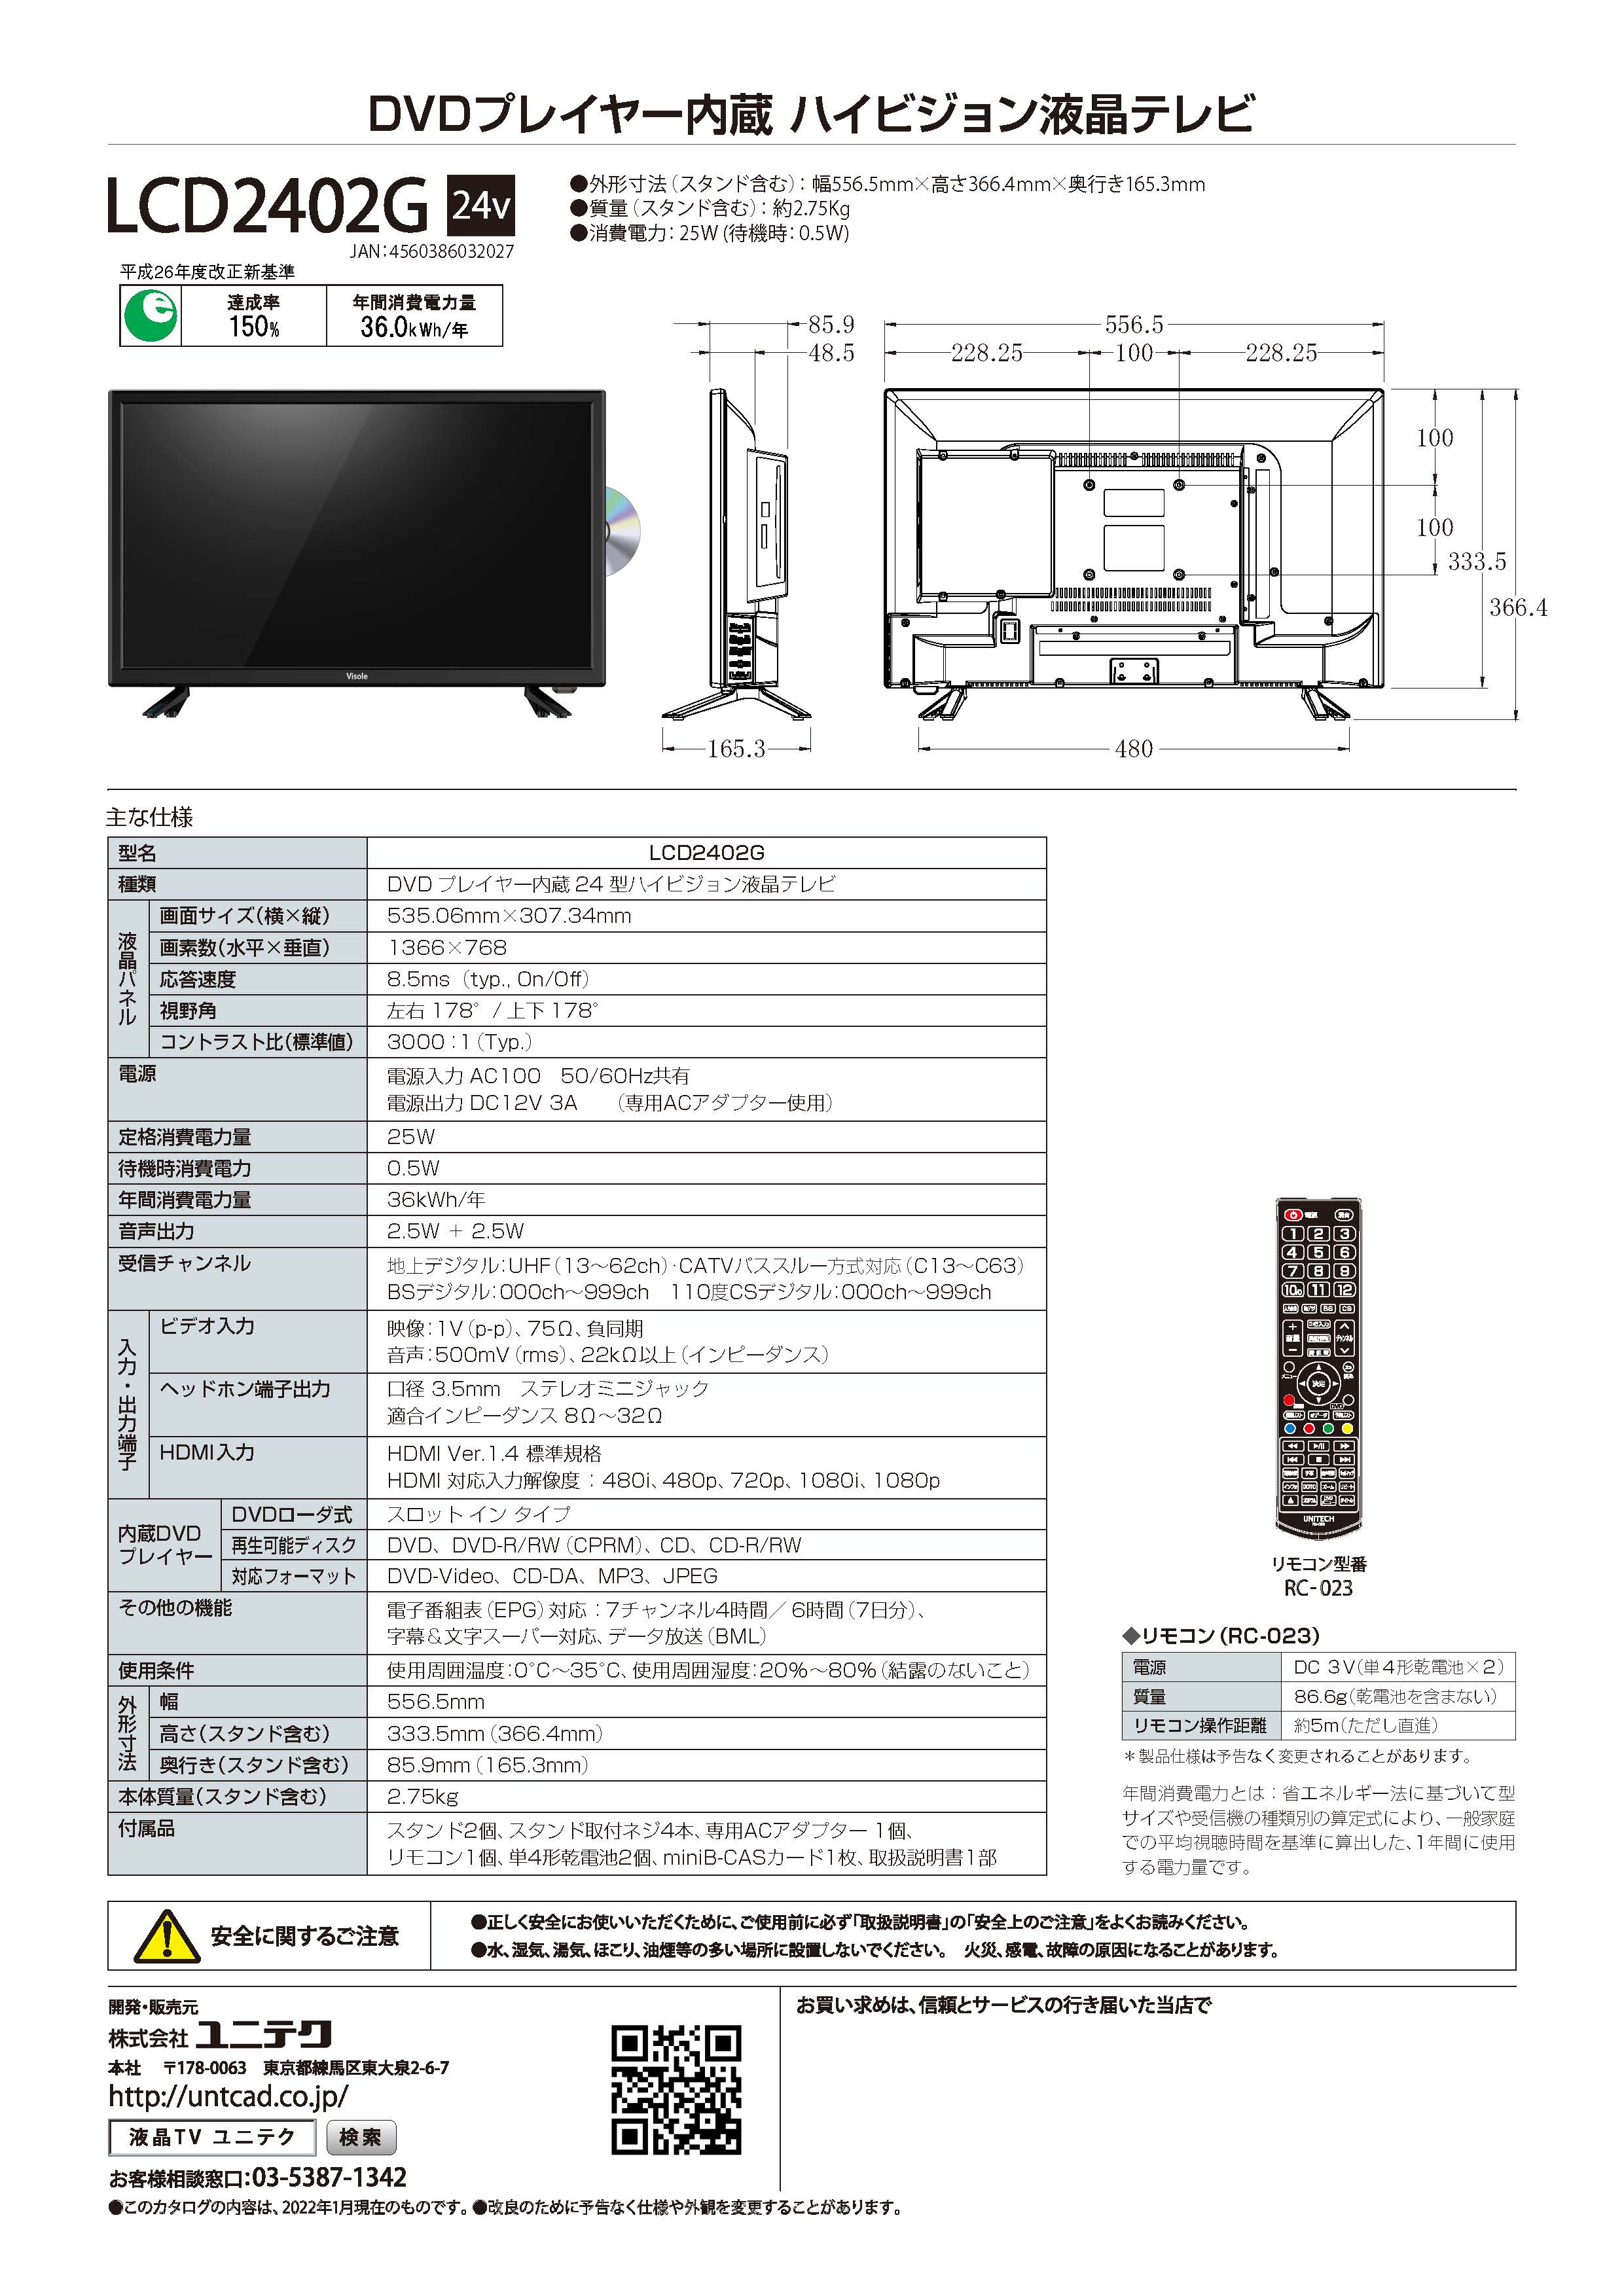 【箱不良アウトレット】DVDプレーヤー内蔵 地上・BS/CSデジタル ハイビジョン液晶テレビ （24V型）LCD2402G画像